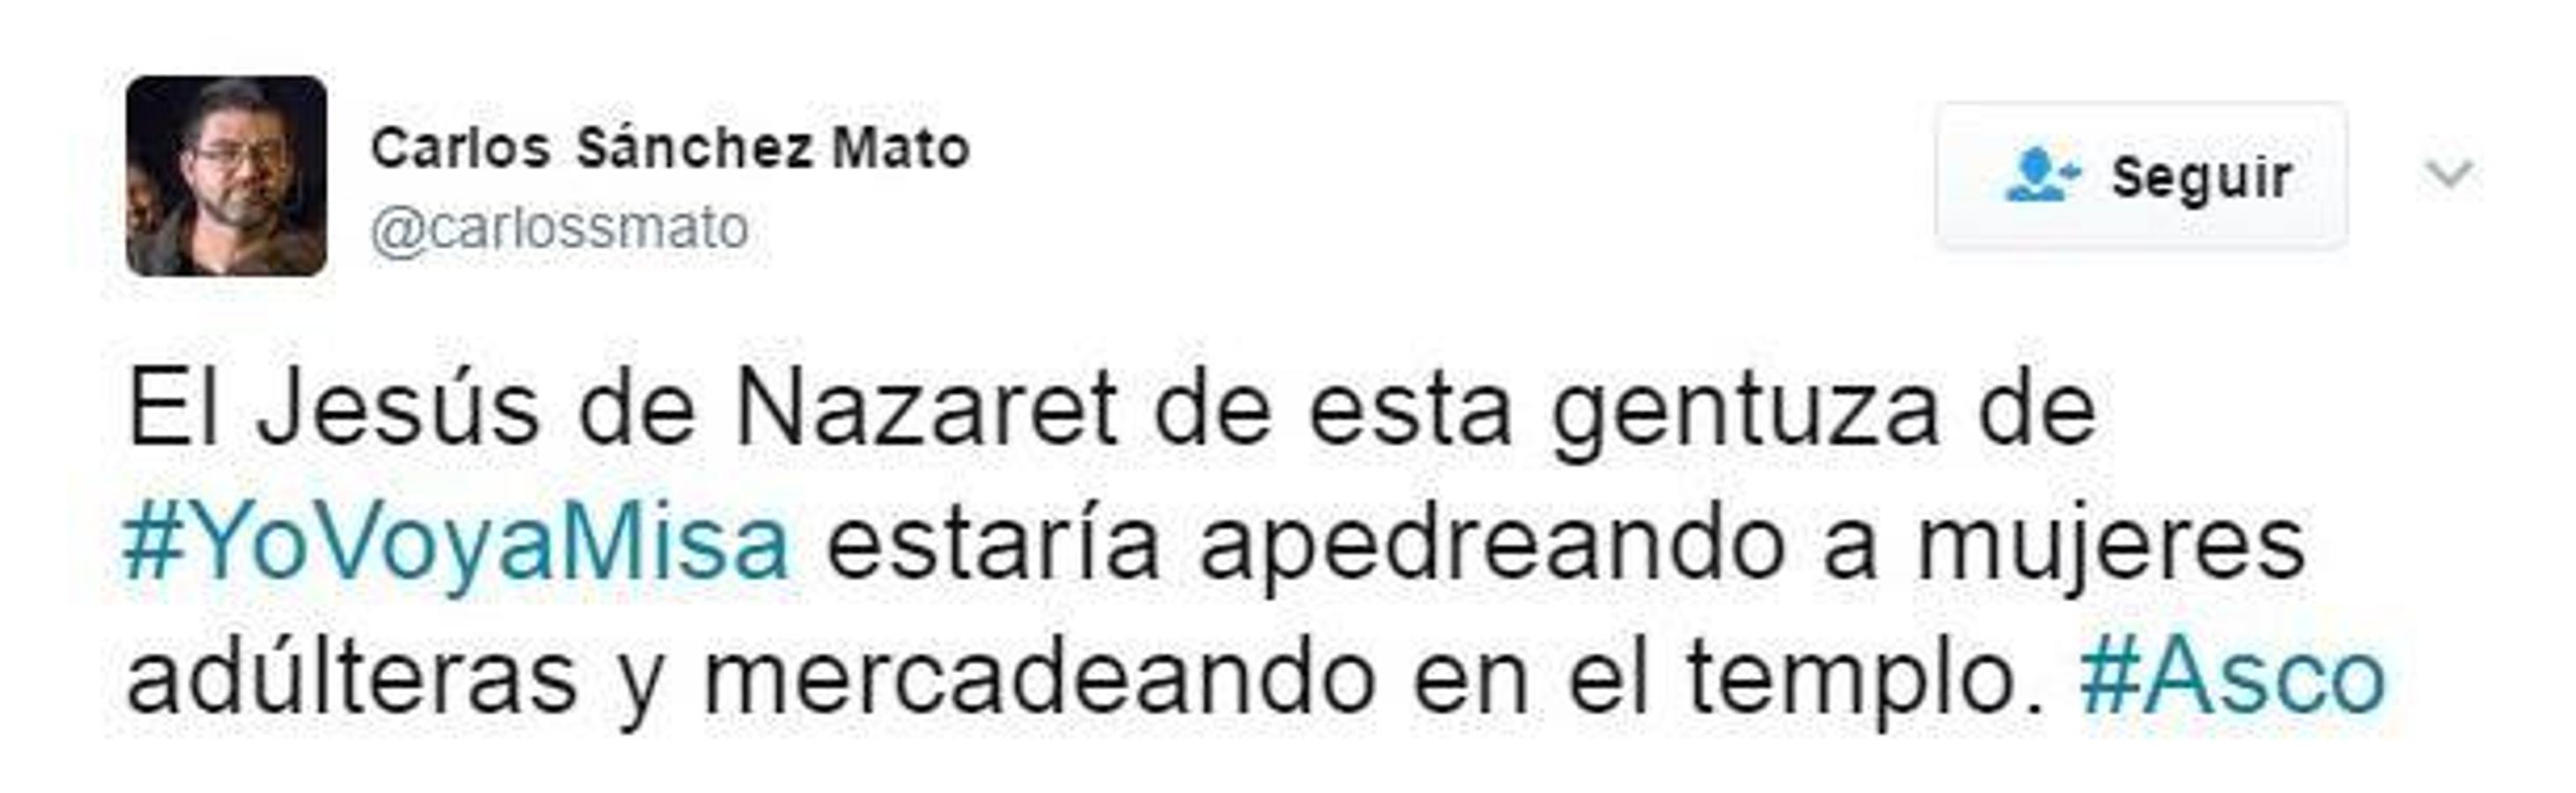 Carlos Sánchez Mato, un concejal de Manuela Carmena, llama «gentuza», en su perfil de Twitter, a los seguidores del movimiento «Yo voy a misa». 